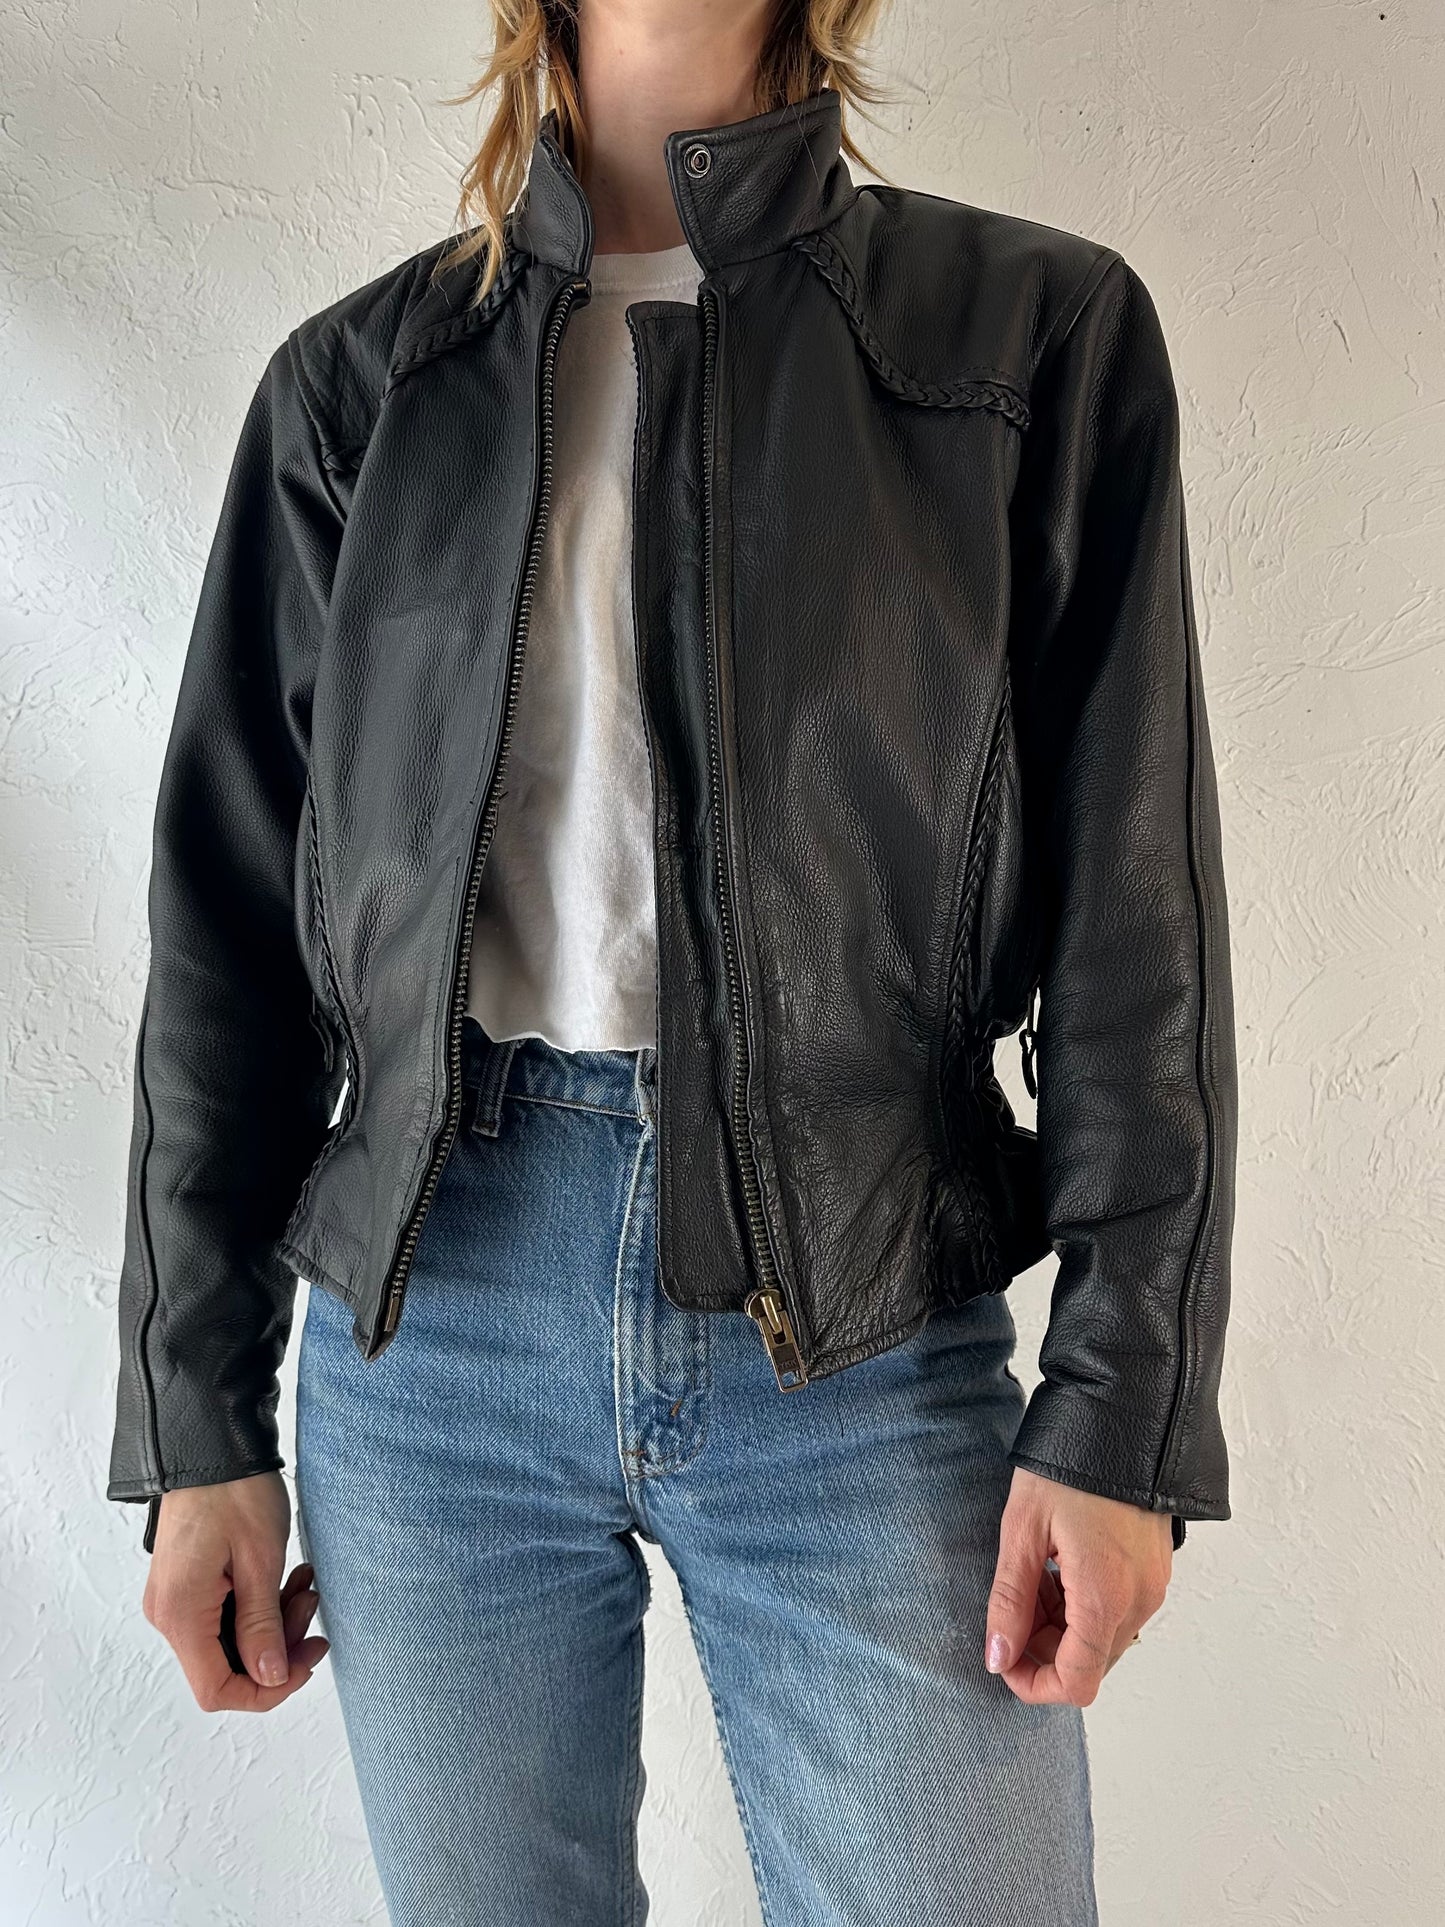 90s 'Hot Leathers' Heavy Duty Black Leather Jacket / Medium